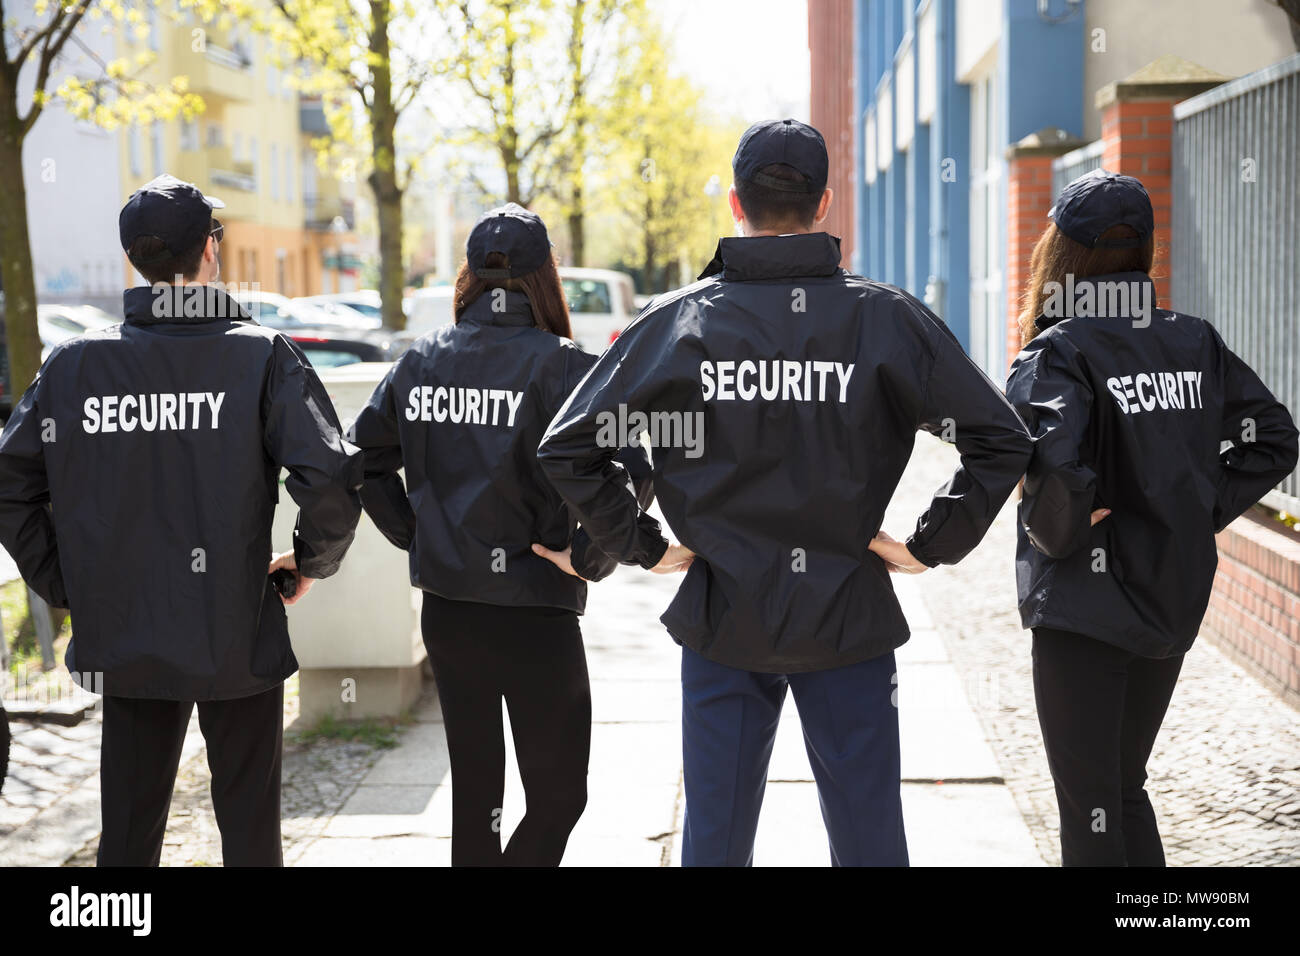 Vue arrière des agents de sécurité avec les mains derrière Retour Standing in a Row Banque D'Images